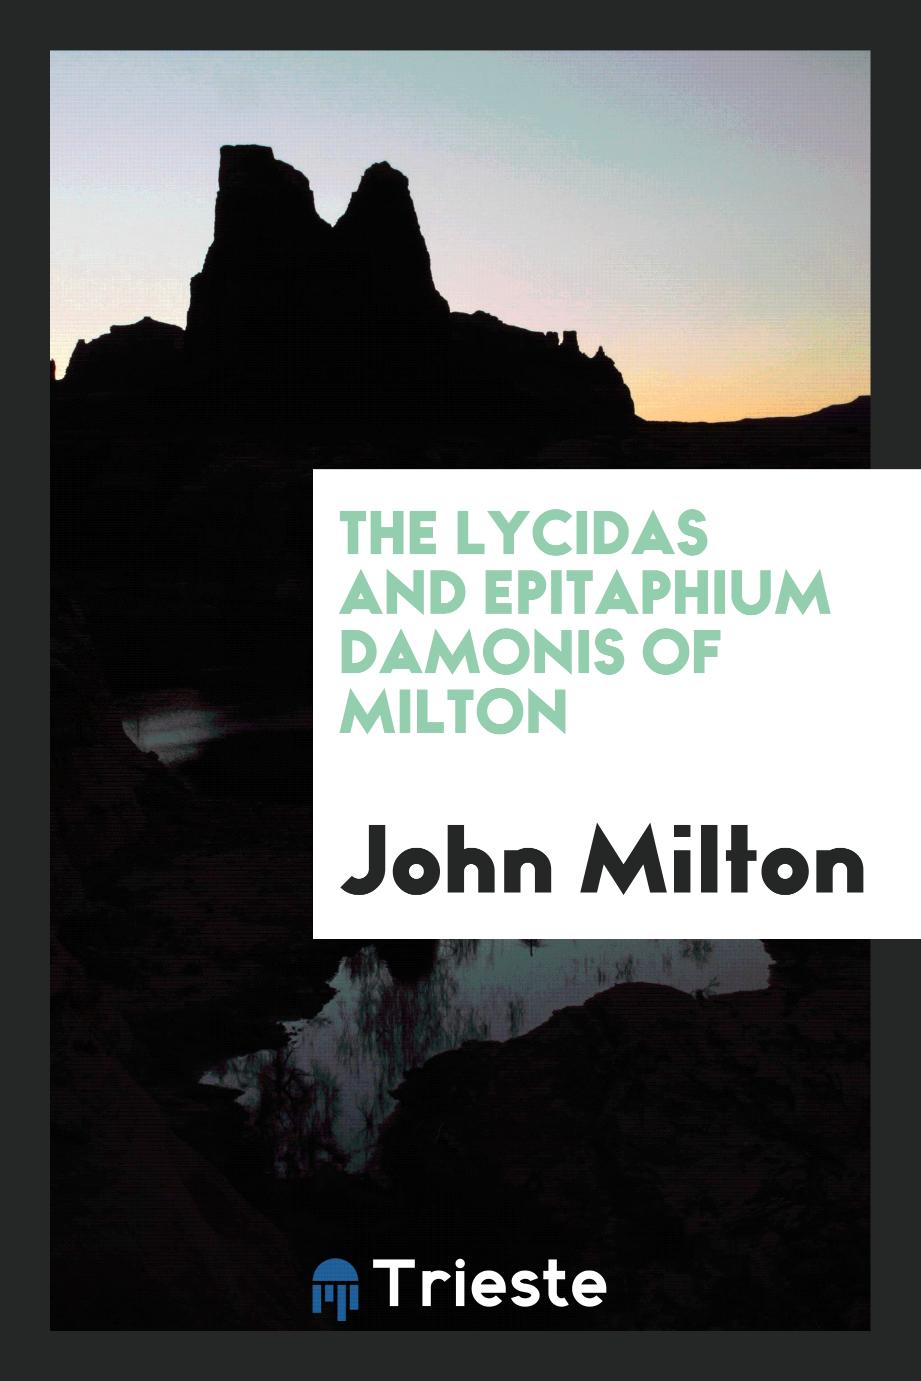 John Milton - The Lycidas and Epitaphium Damonis of Milton